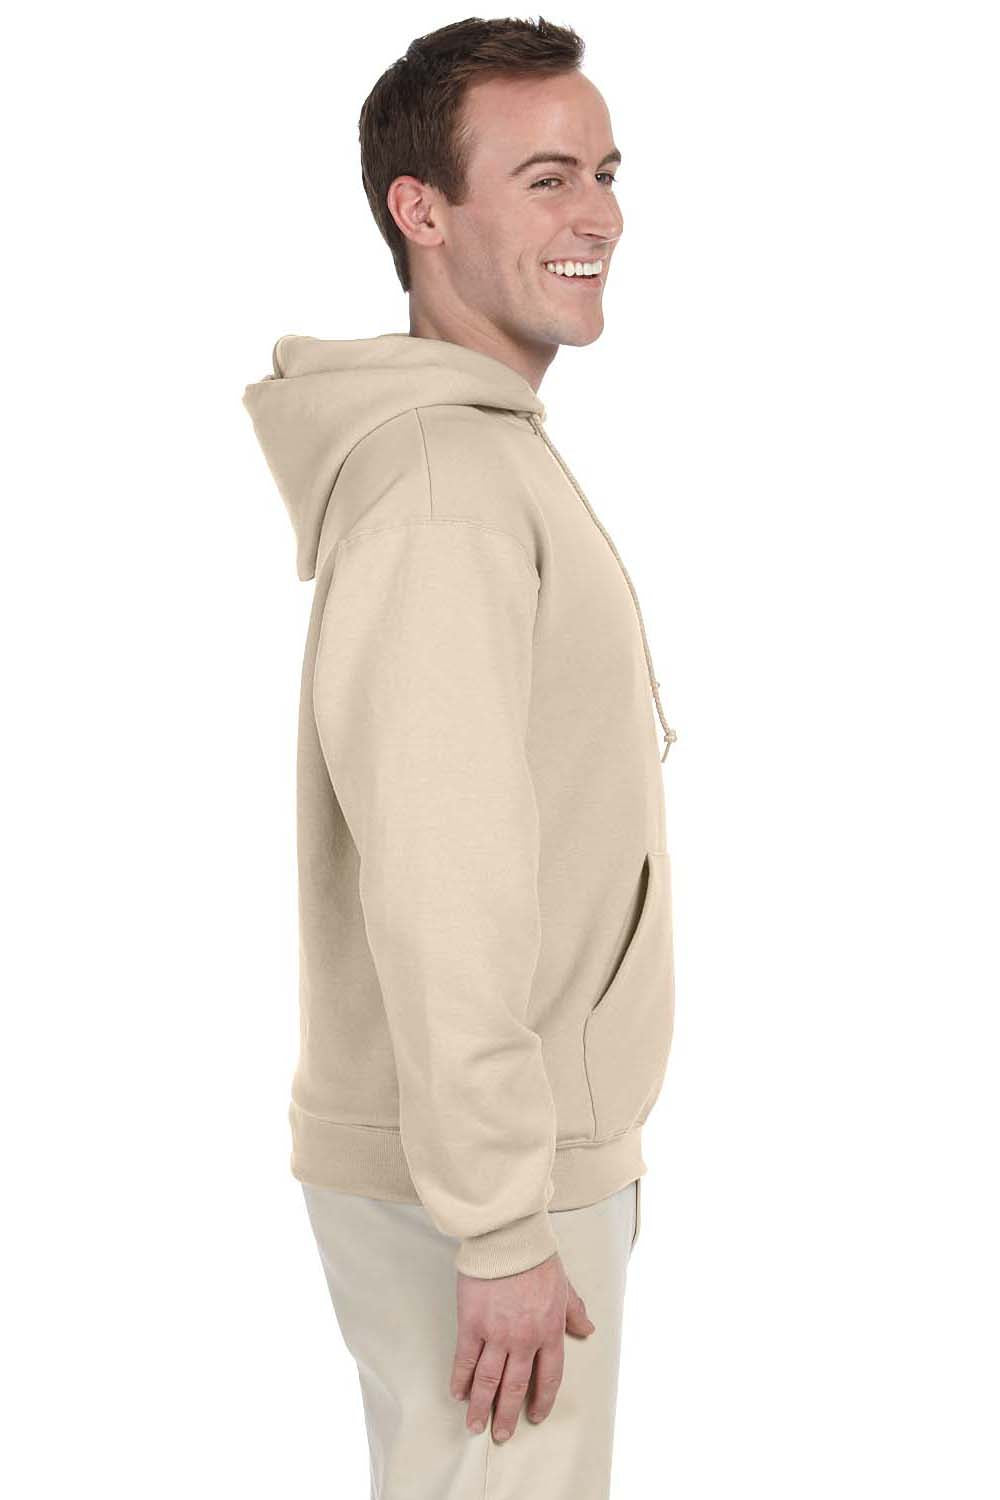 Jerzees 996 Mens NuBlend Fleece Hooded Sweatshirt Hoodie Sandstone Brown Side